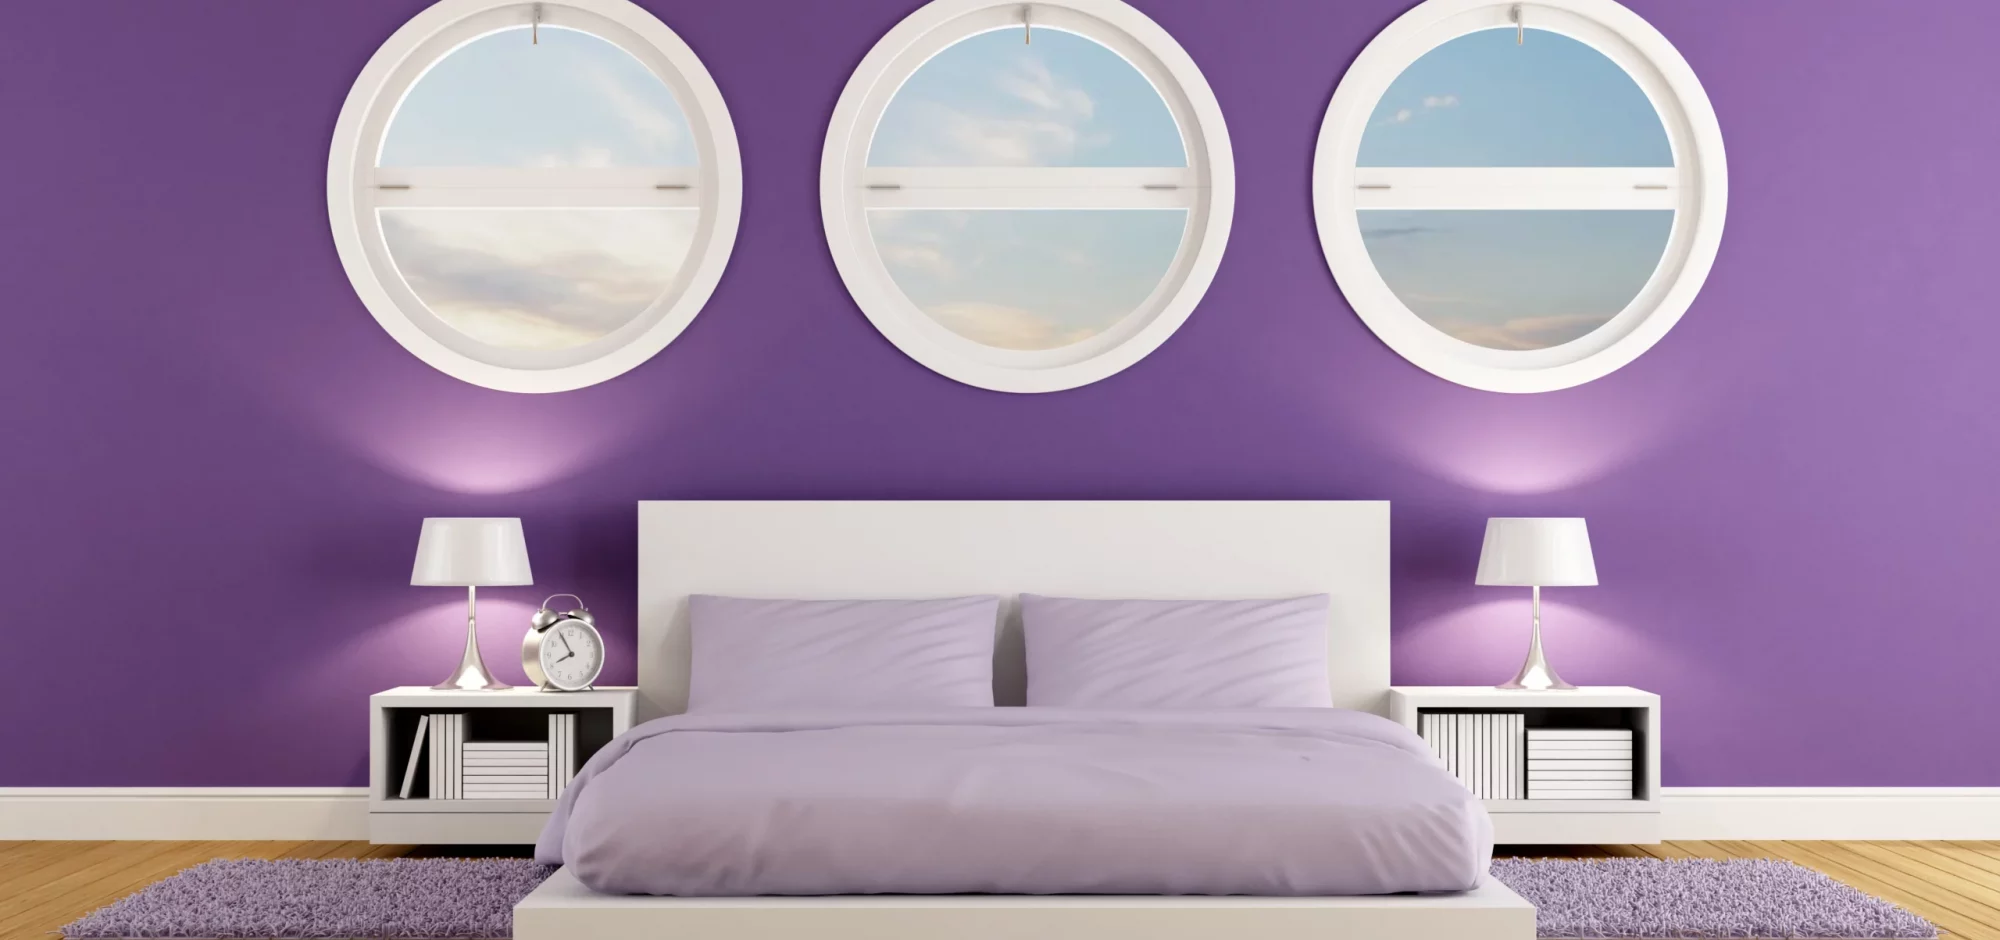 Purple Room Ideas 9